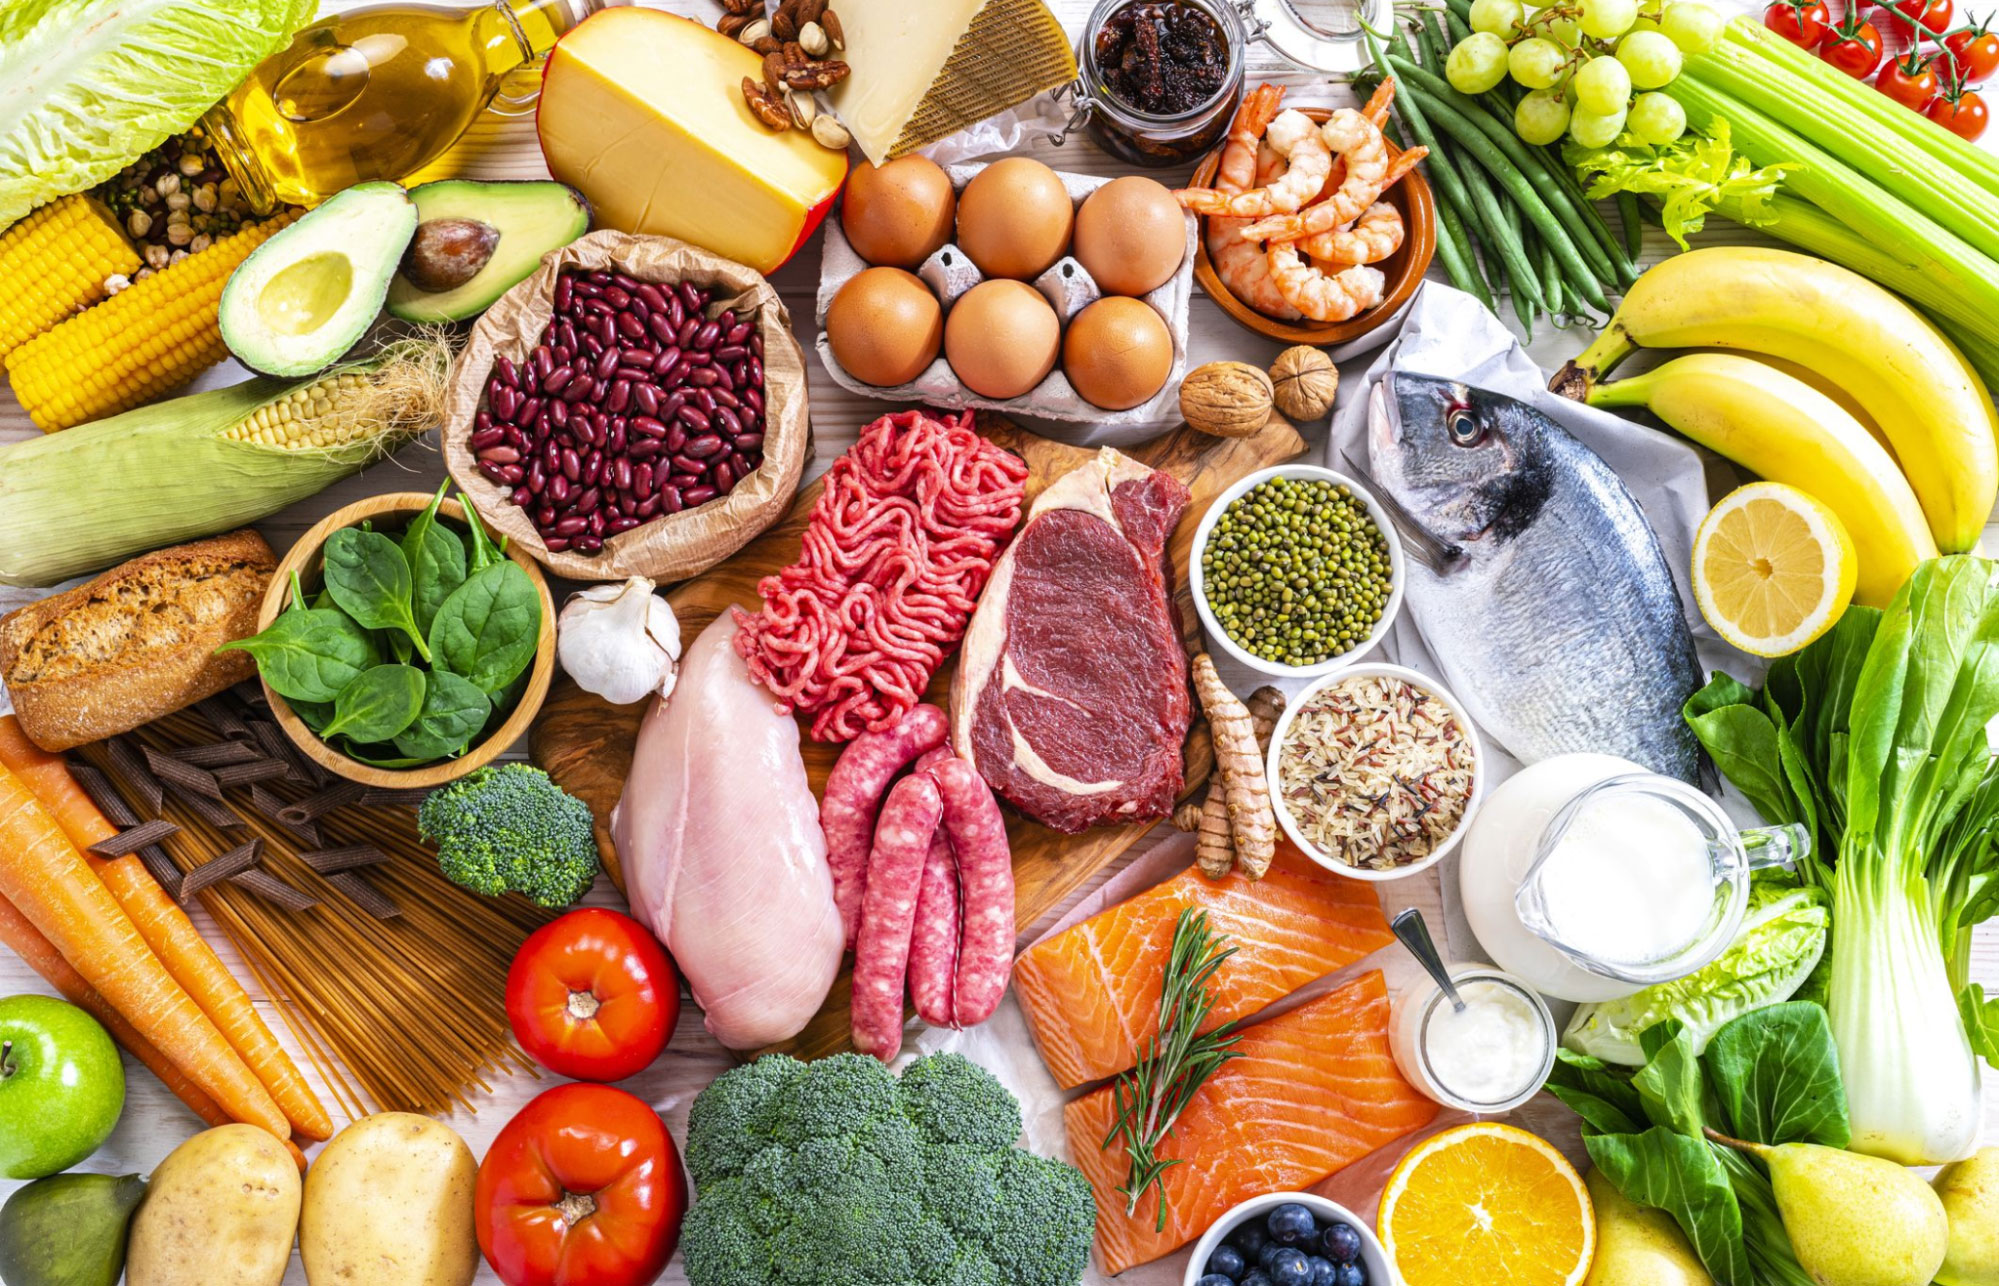 Tăng cường protein và chất béo trong thực đơn ăn uống hằng ngày